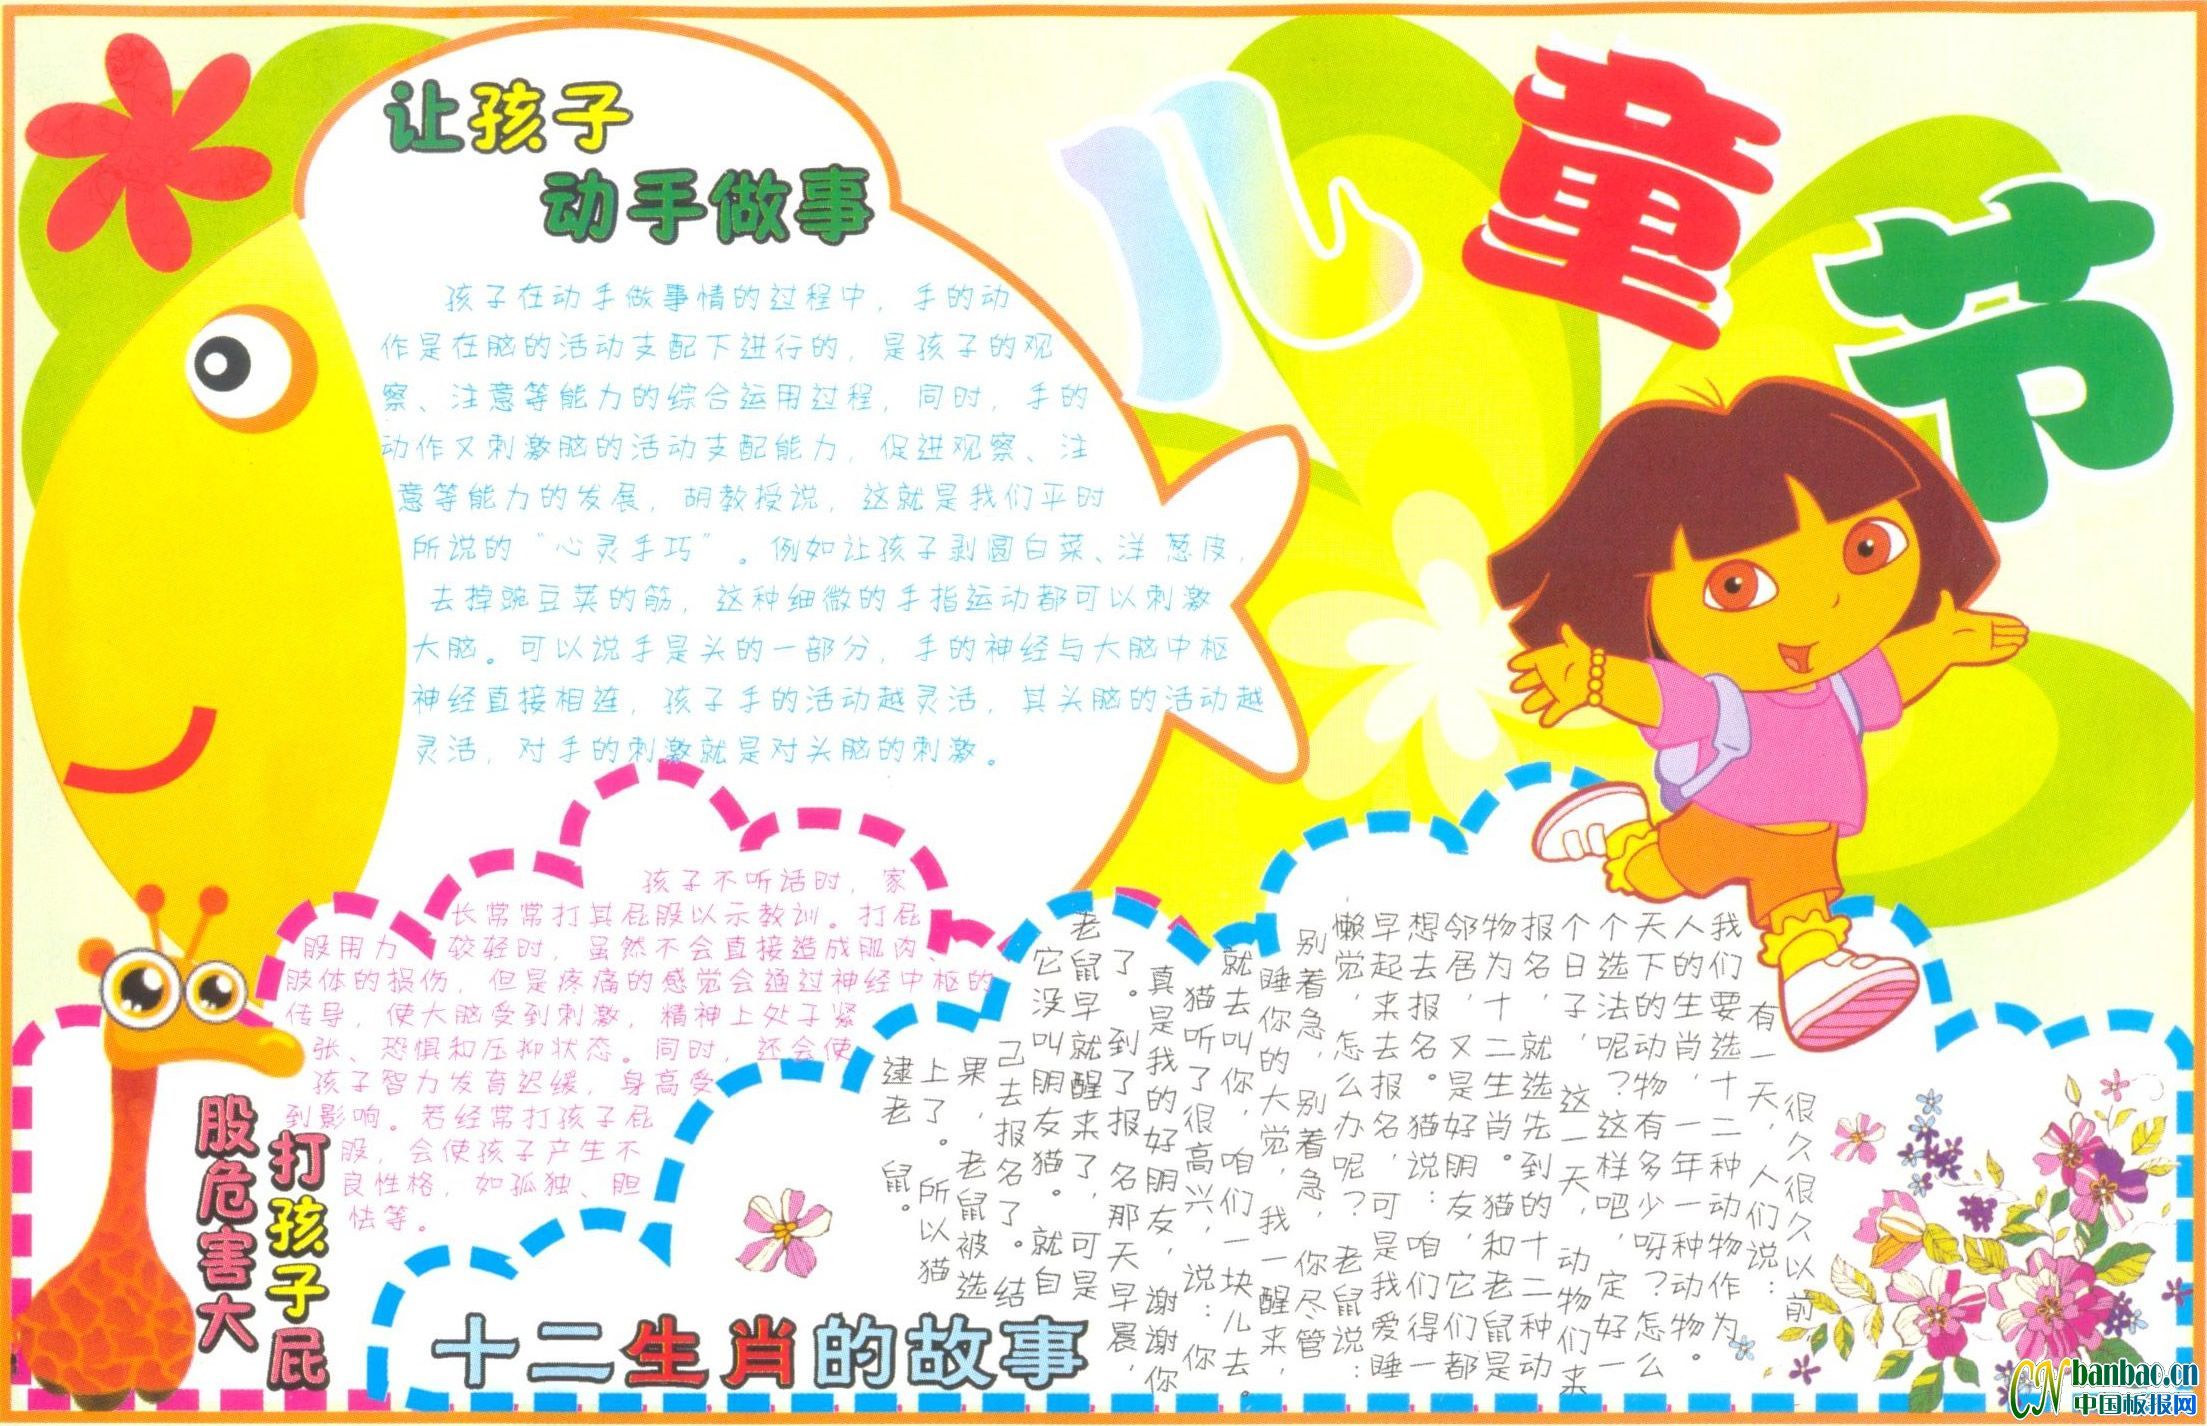 2011儿童节手抄报版式设计